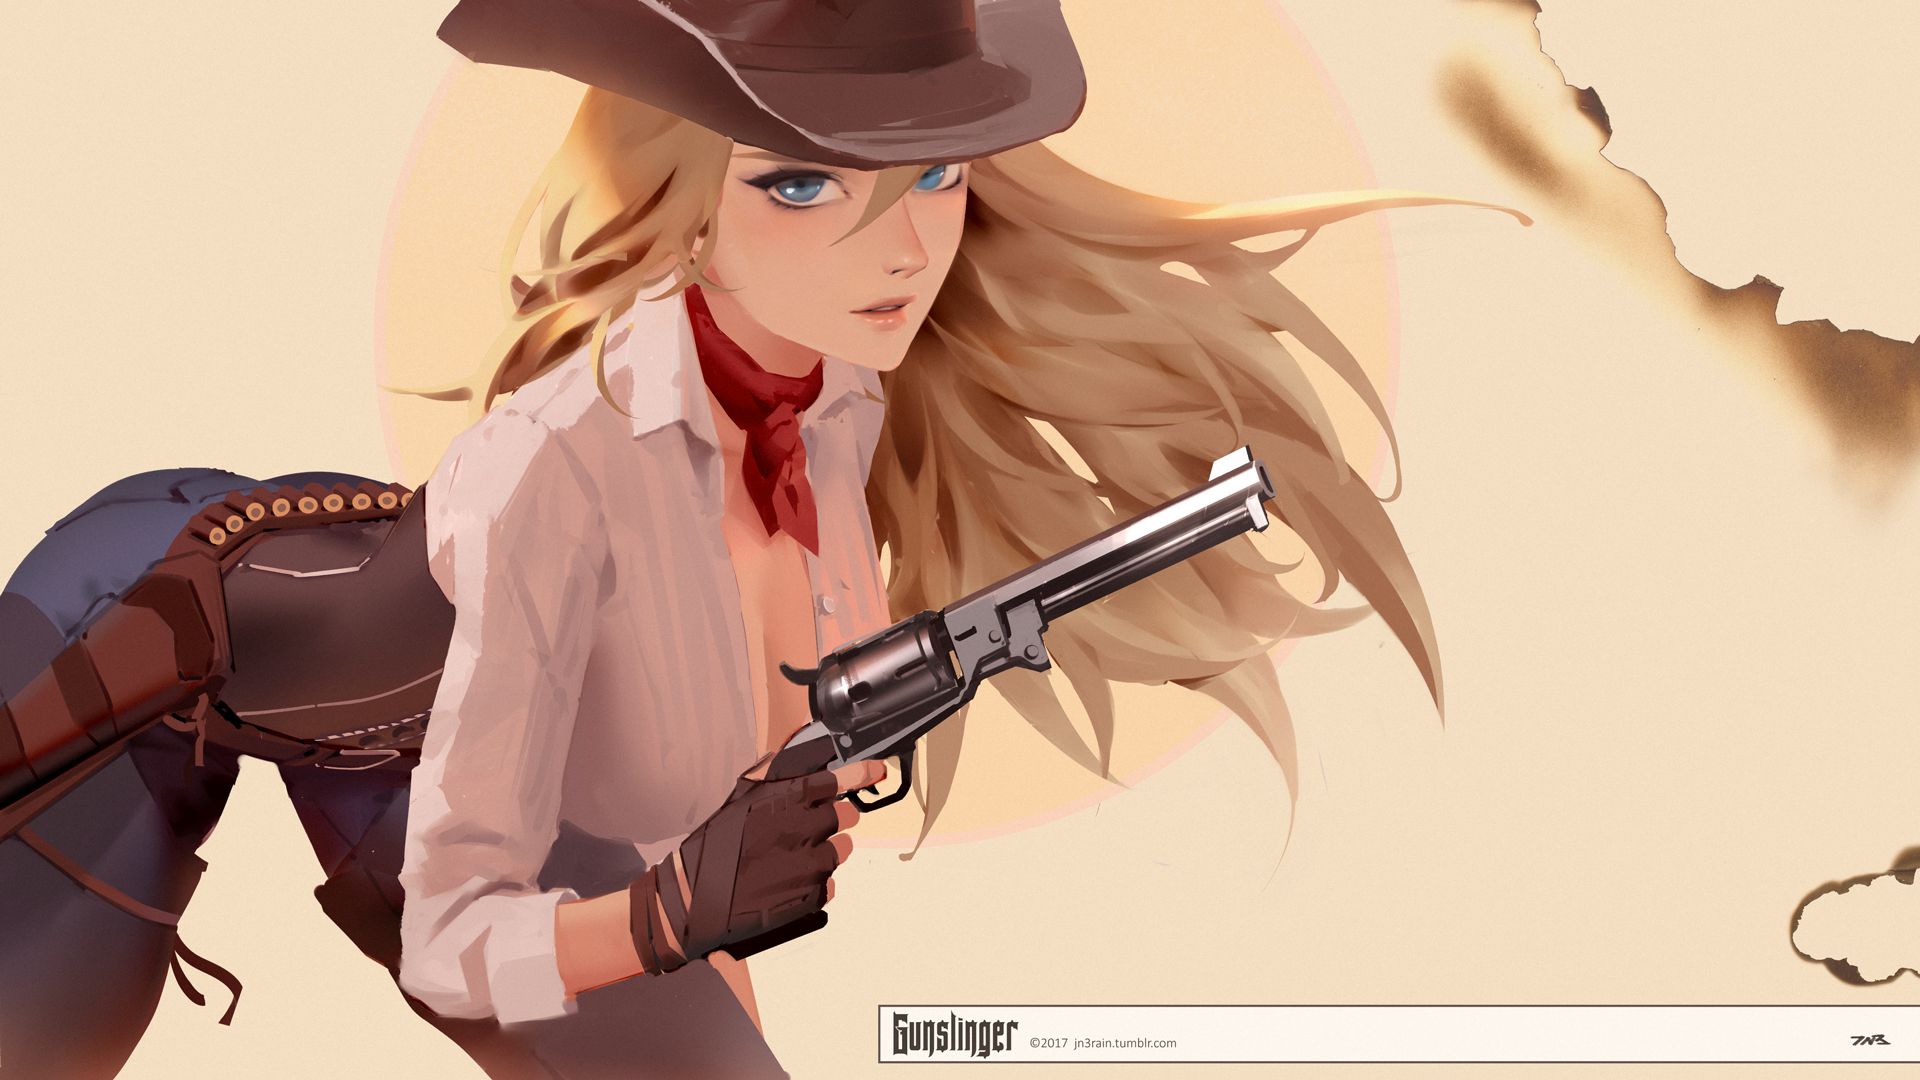 General 1920x1080 cowgirl girls with guns revolver scarf blonde blue eyes illustration gloves cowboy hats beige beige background